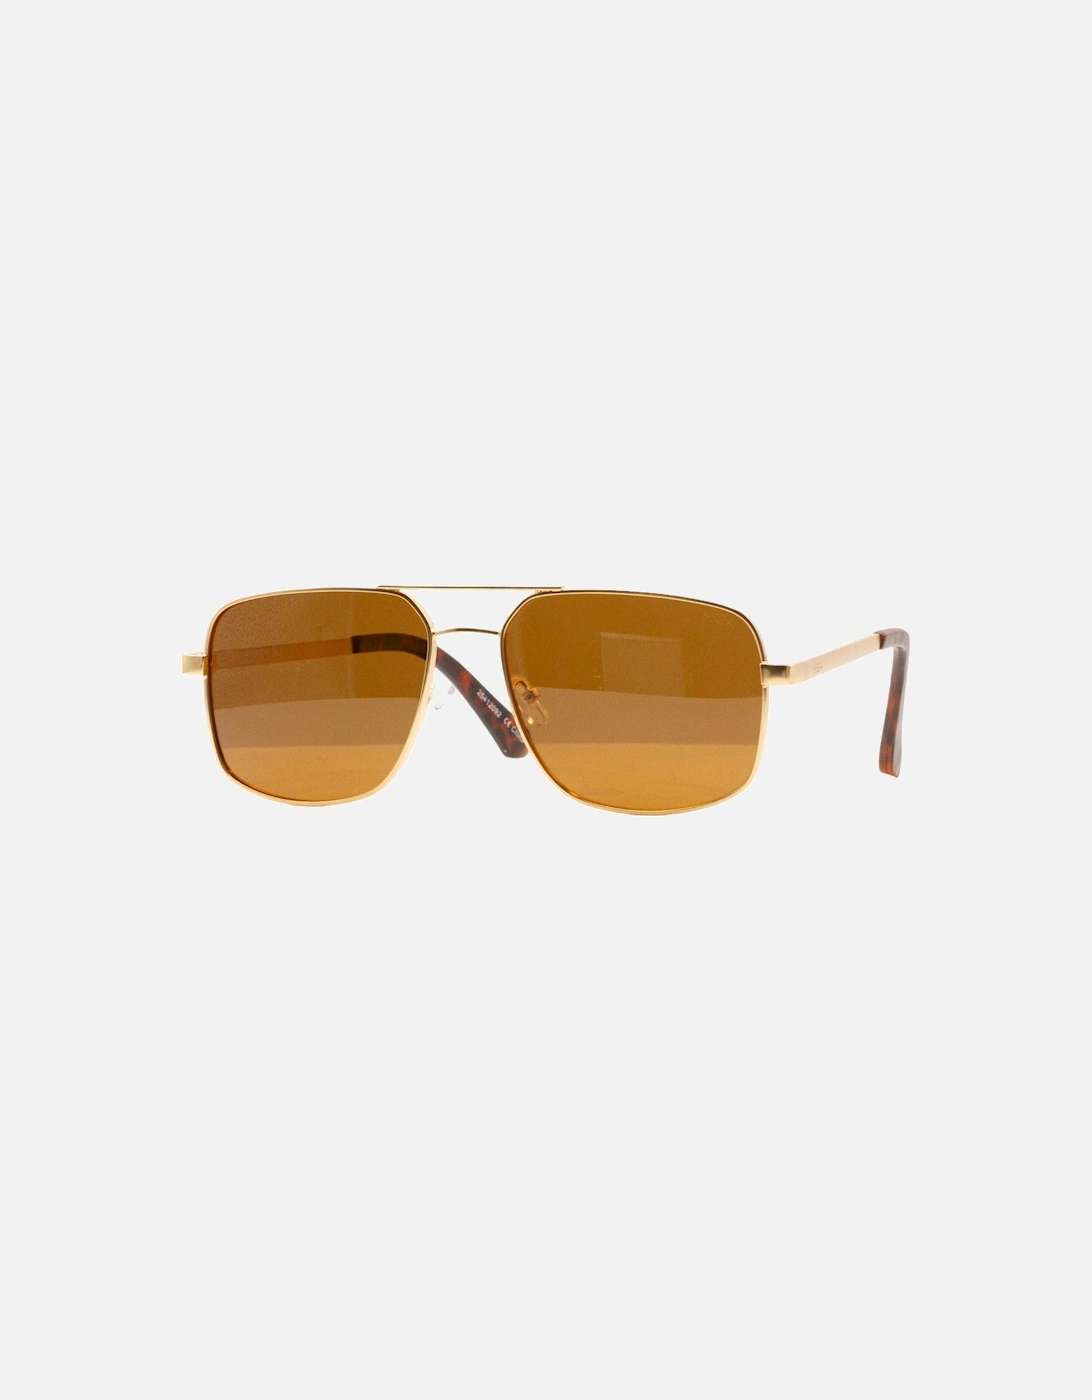 El Morro Sunglasses - Gold/Brown Polarized, 4 of 3